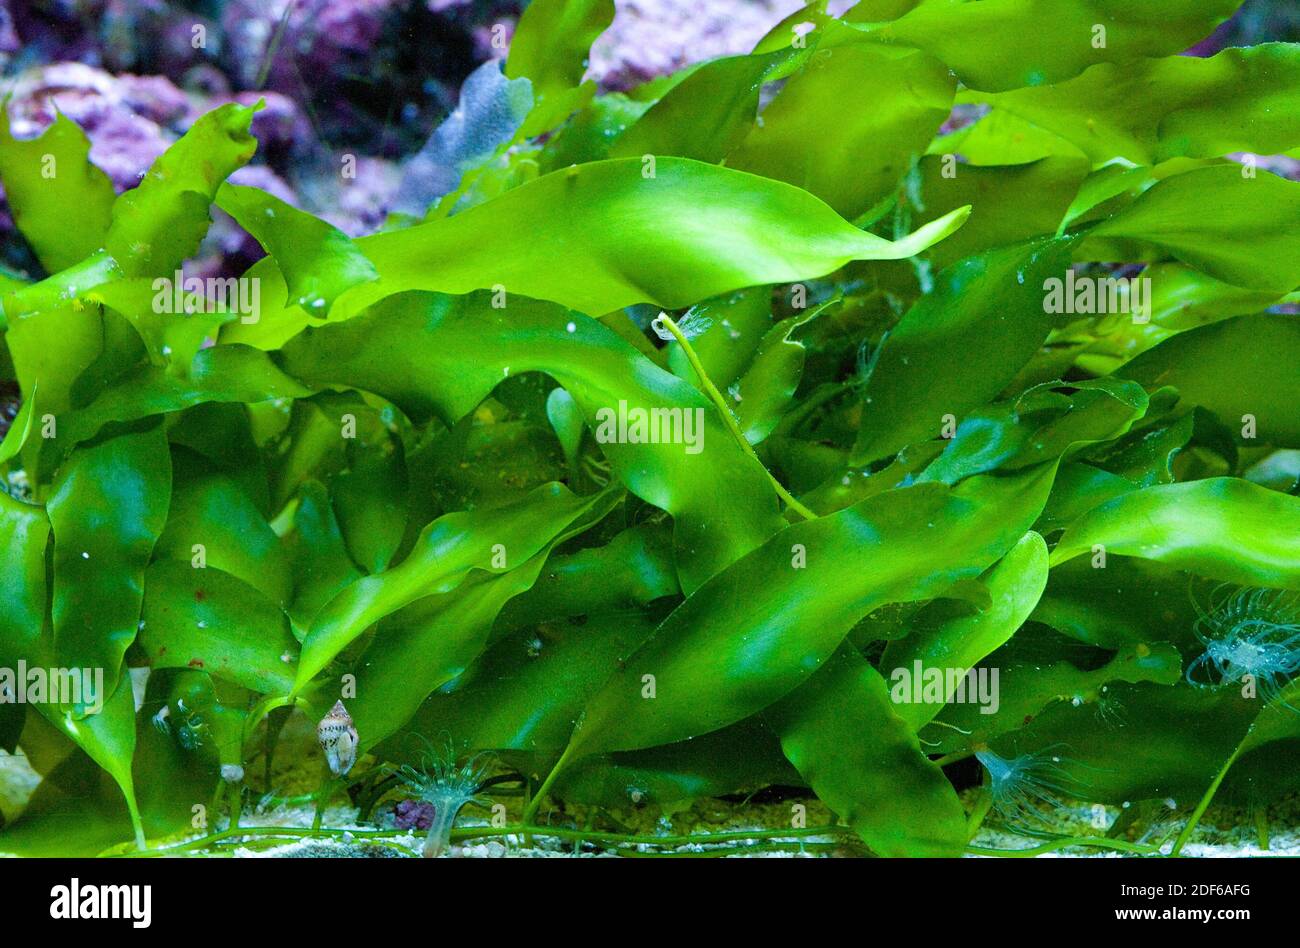 Seaweed Caulerpa prolifera (Chlorophyta). Mediterranean sea. Stock Photo